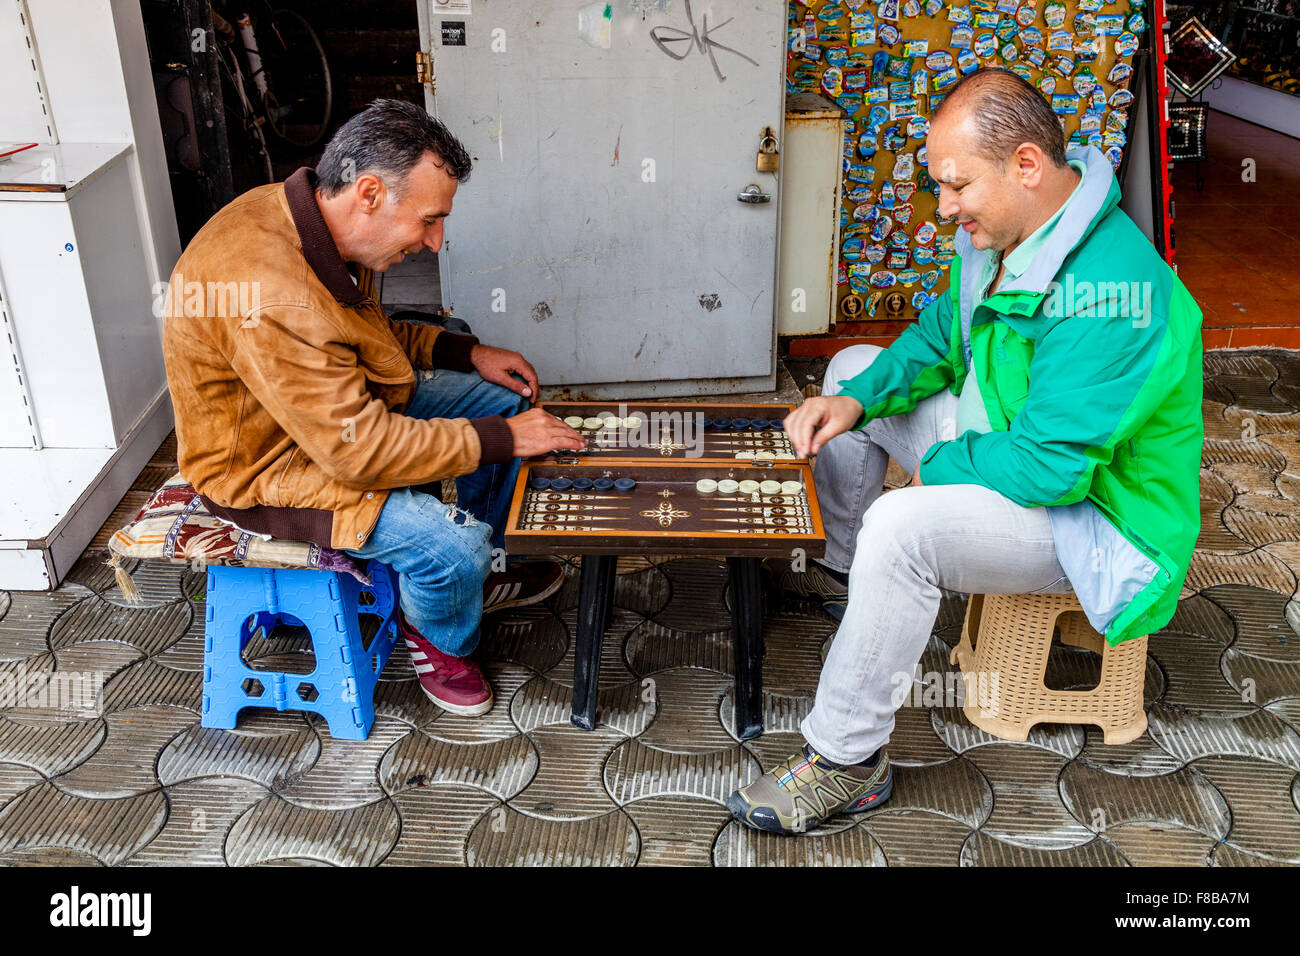 Türkische Männer spielen Backgammon In der Straße, Marmaris, Provinz Mugla,  Türkei Stockfotografie - Alamy